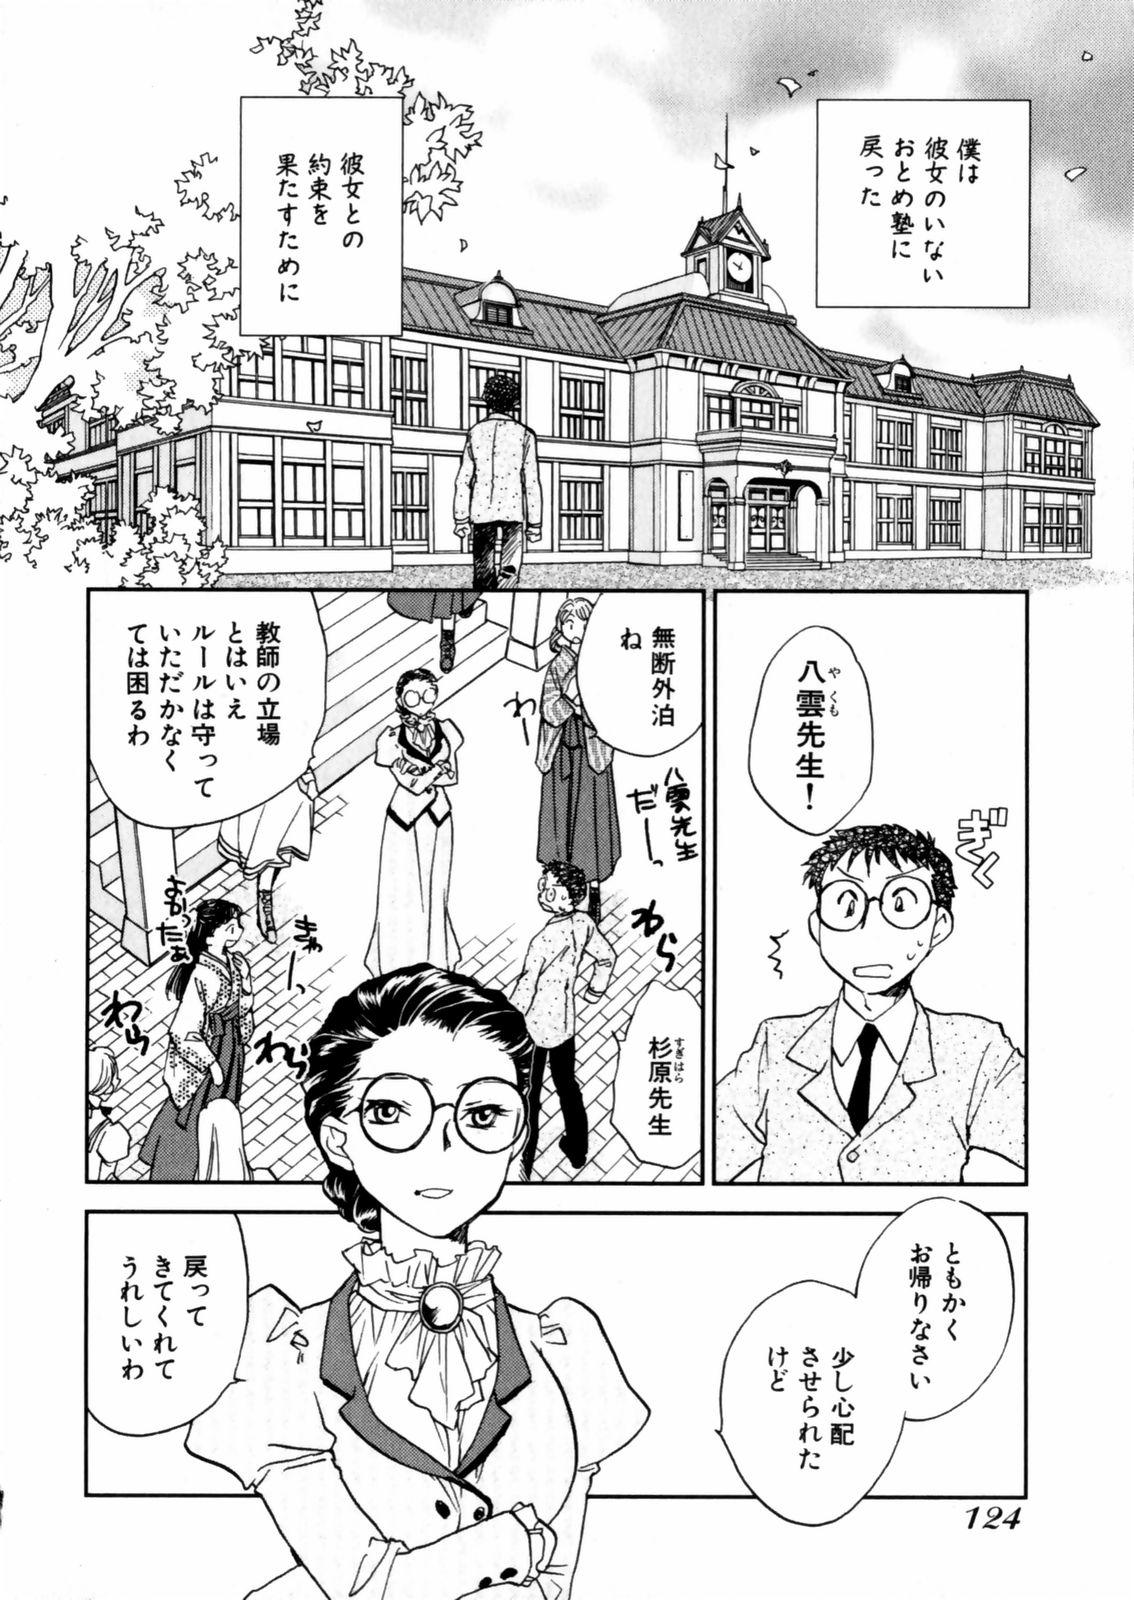 [Okano Ahiru] Hanasake ! Otome Juku (Otome Private Tutoring School) Vol.2 125